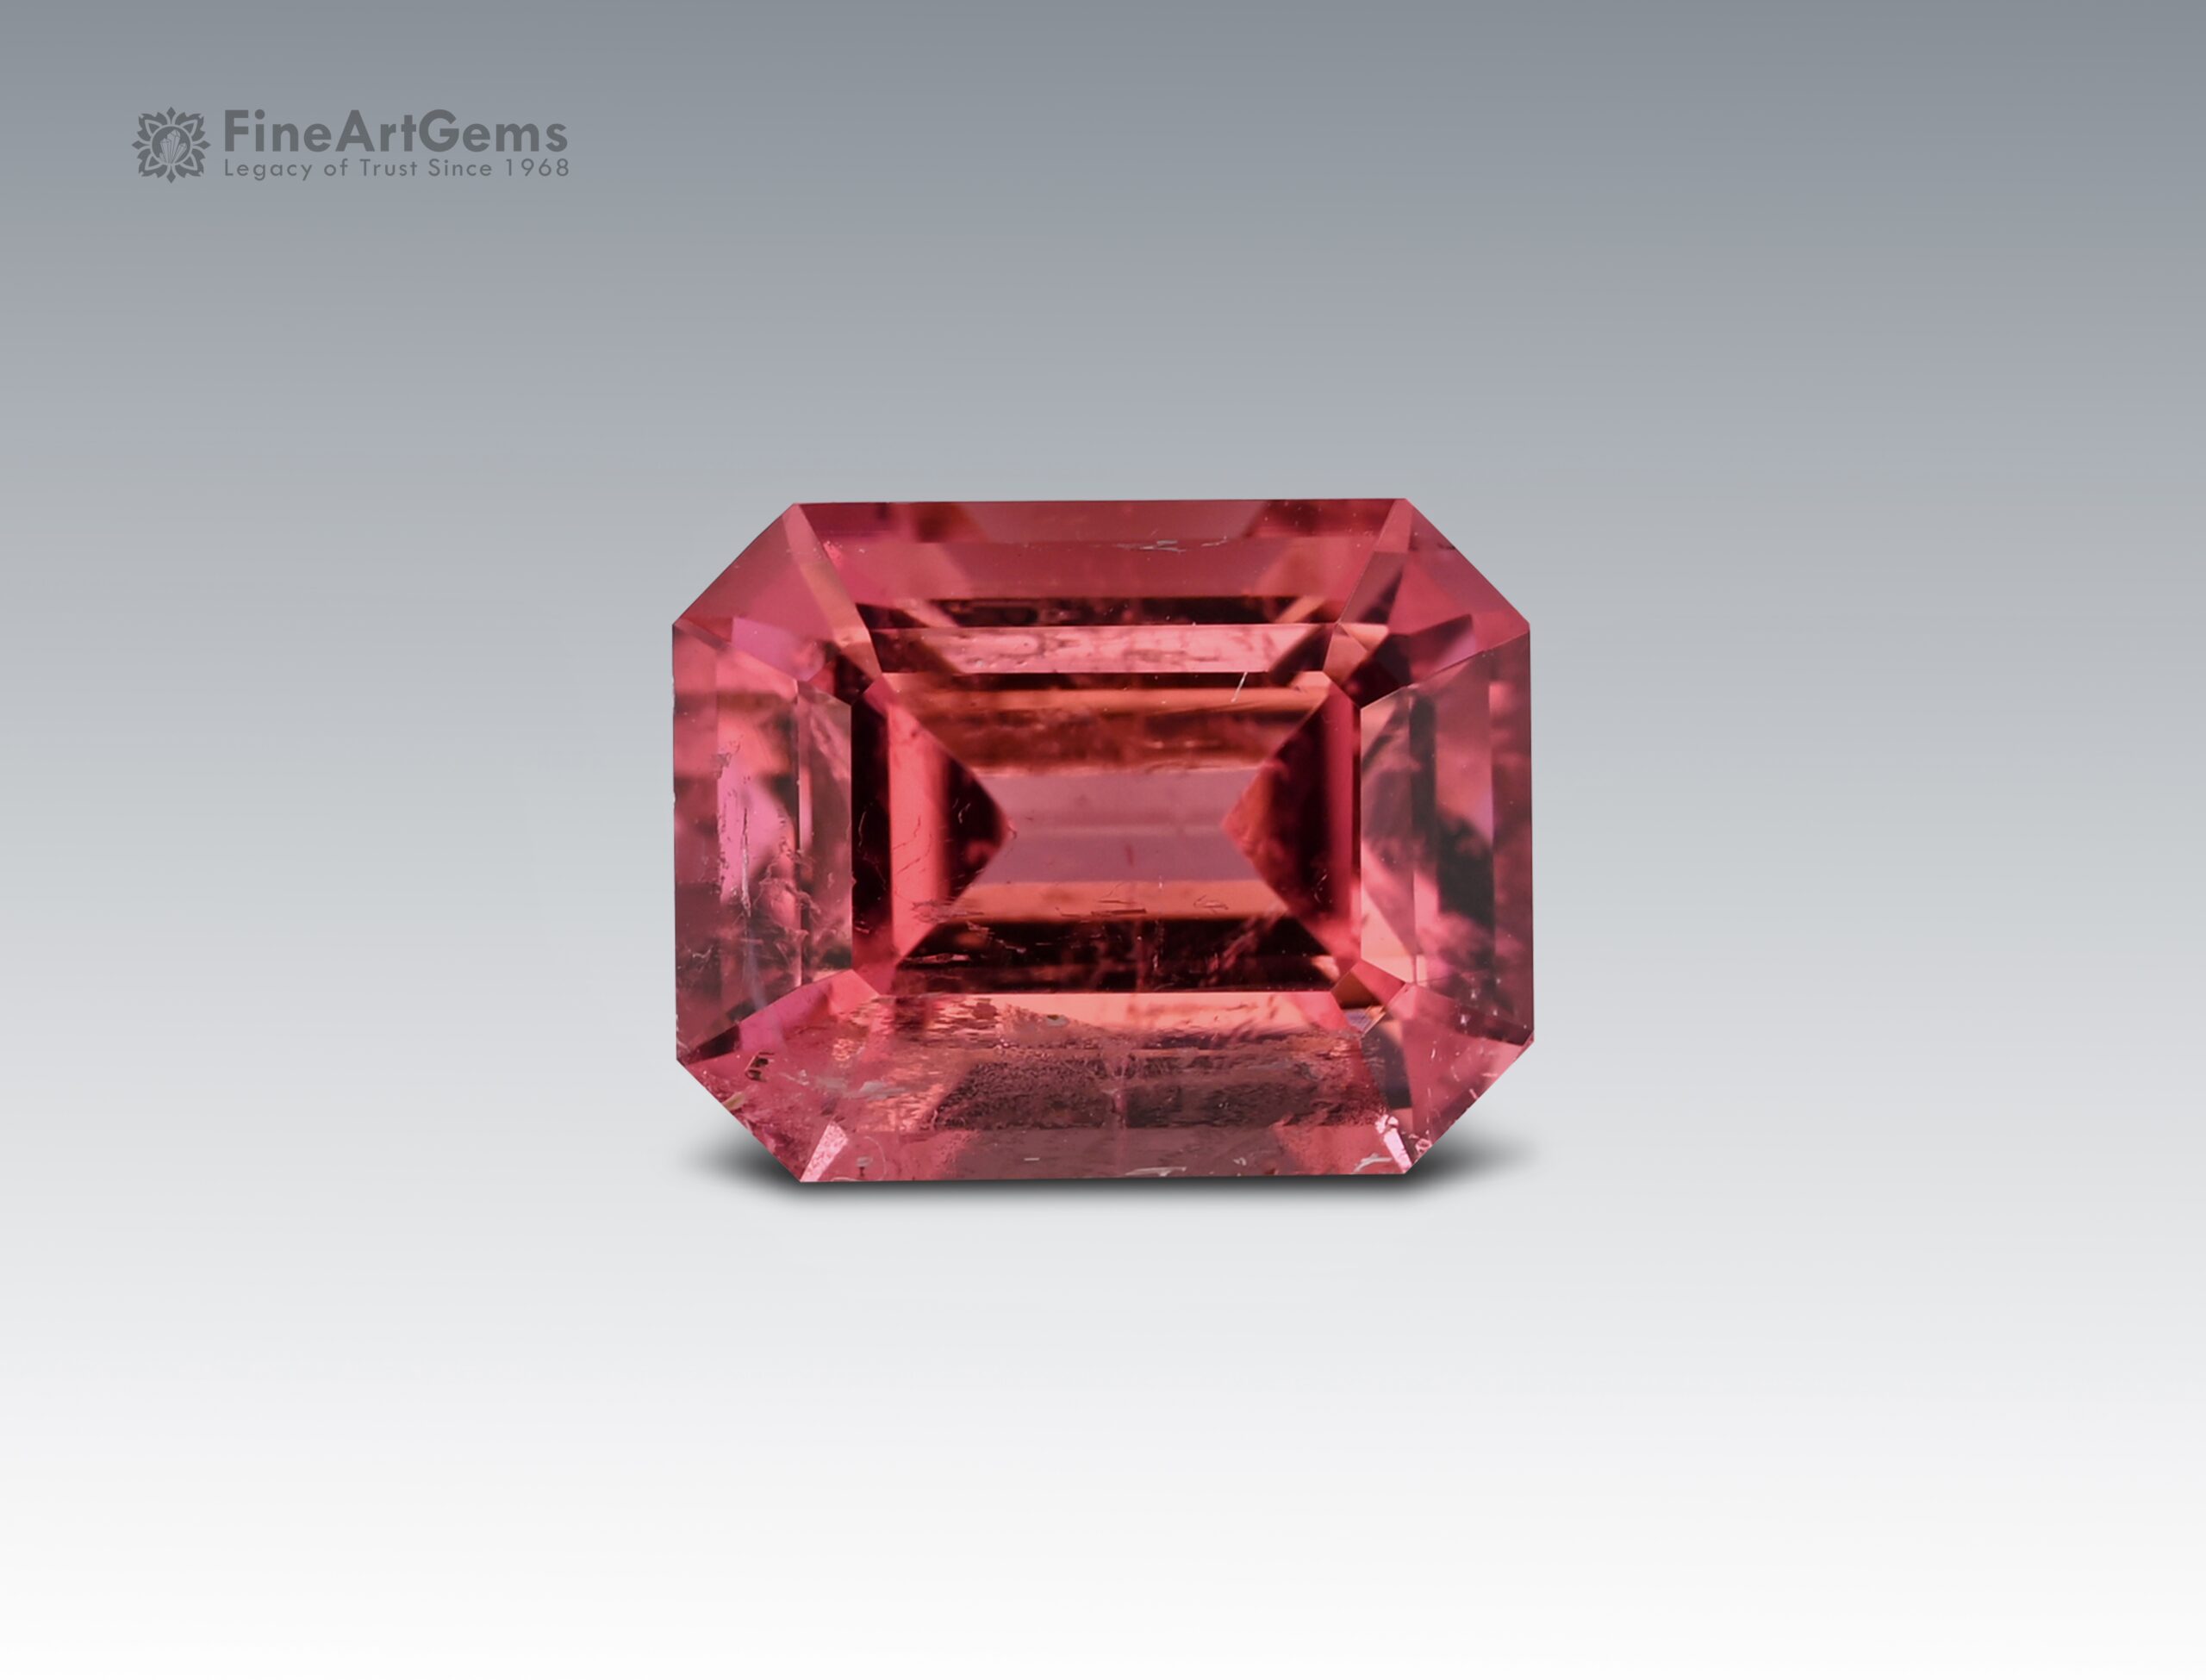 1.7 Carats Beautiful Pink Tourmaline Natural Gemstone